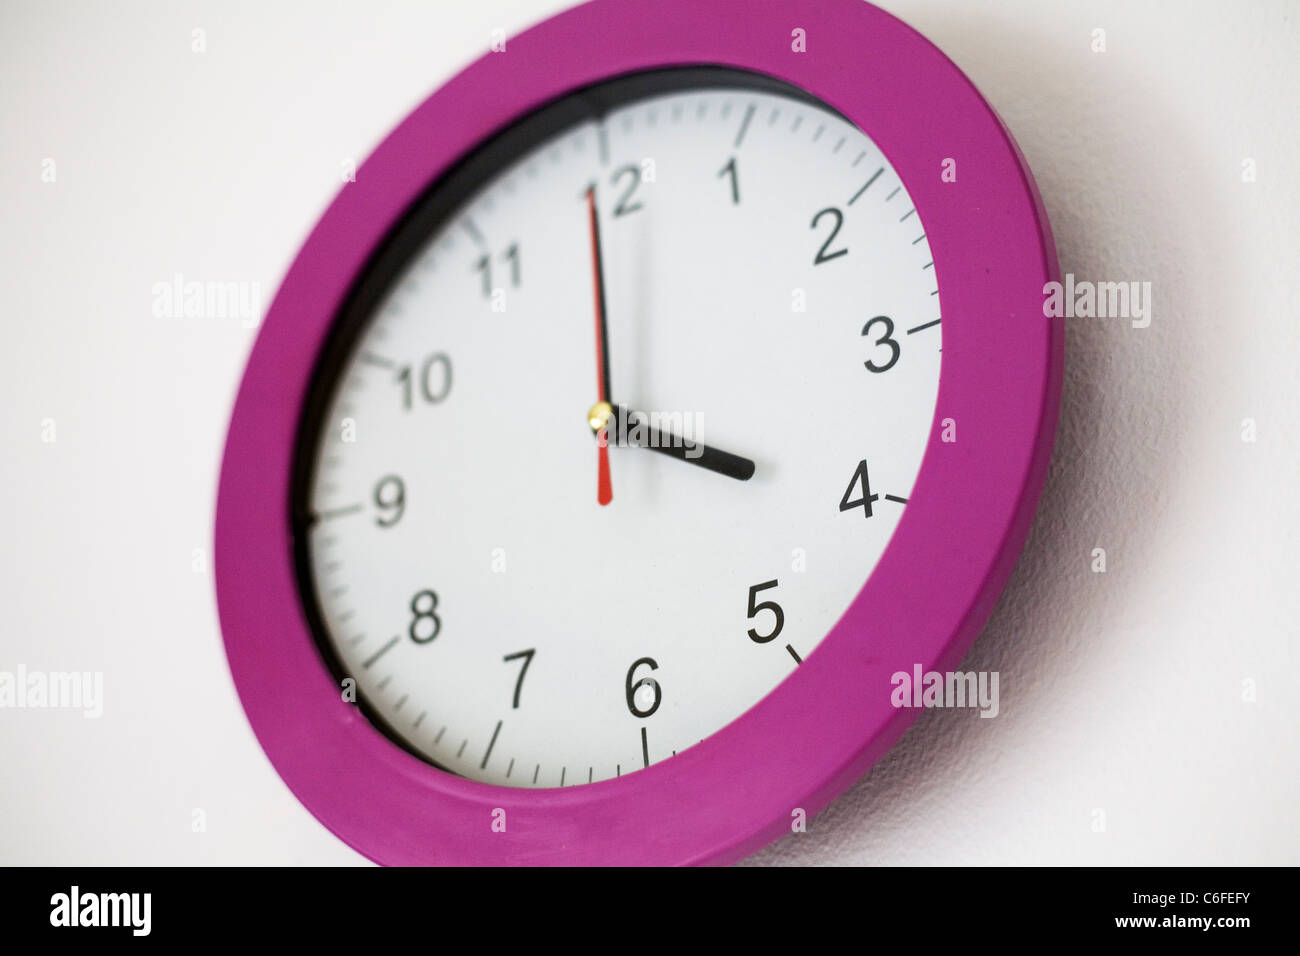 Eine Uhr zeigt die Zeit um vier Uhr Stockfotografie - Alamy